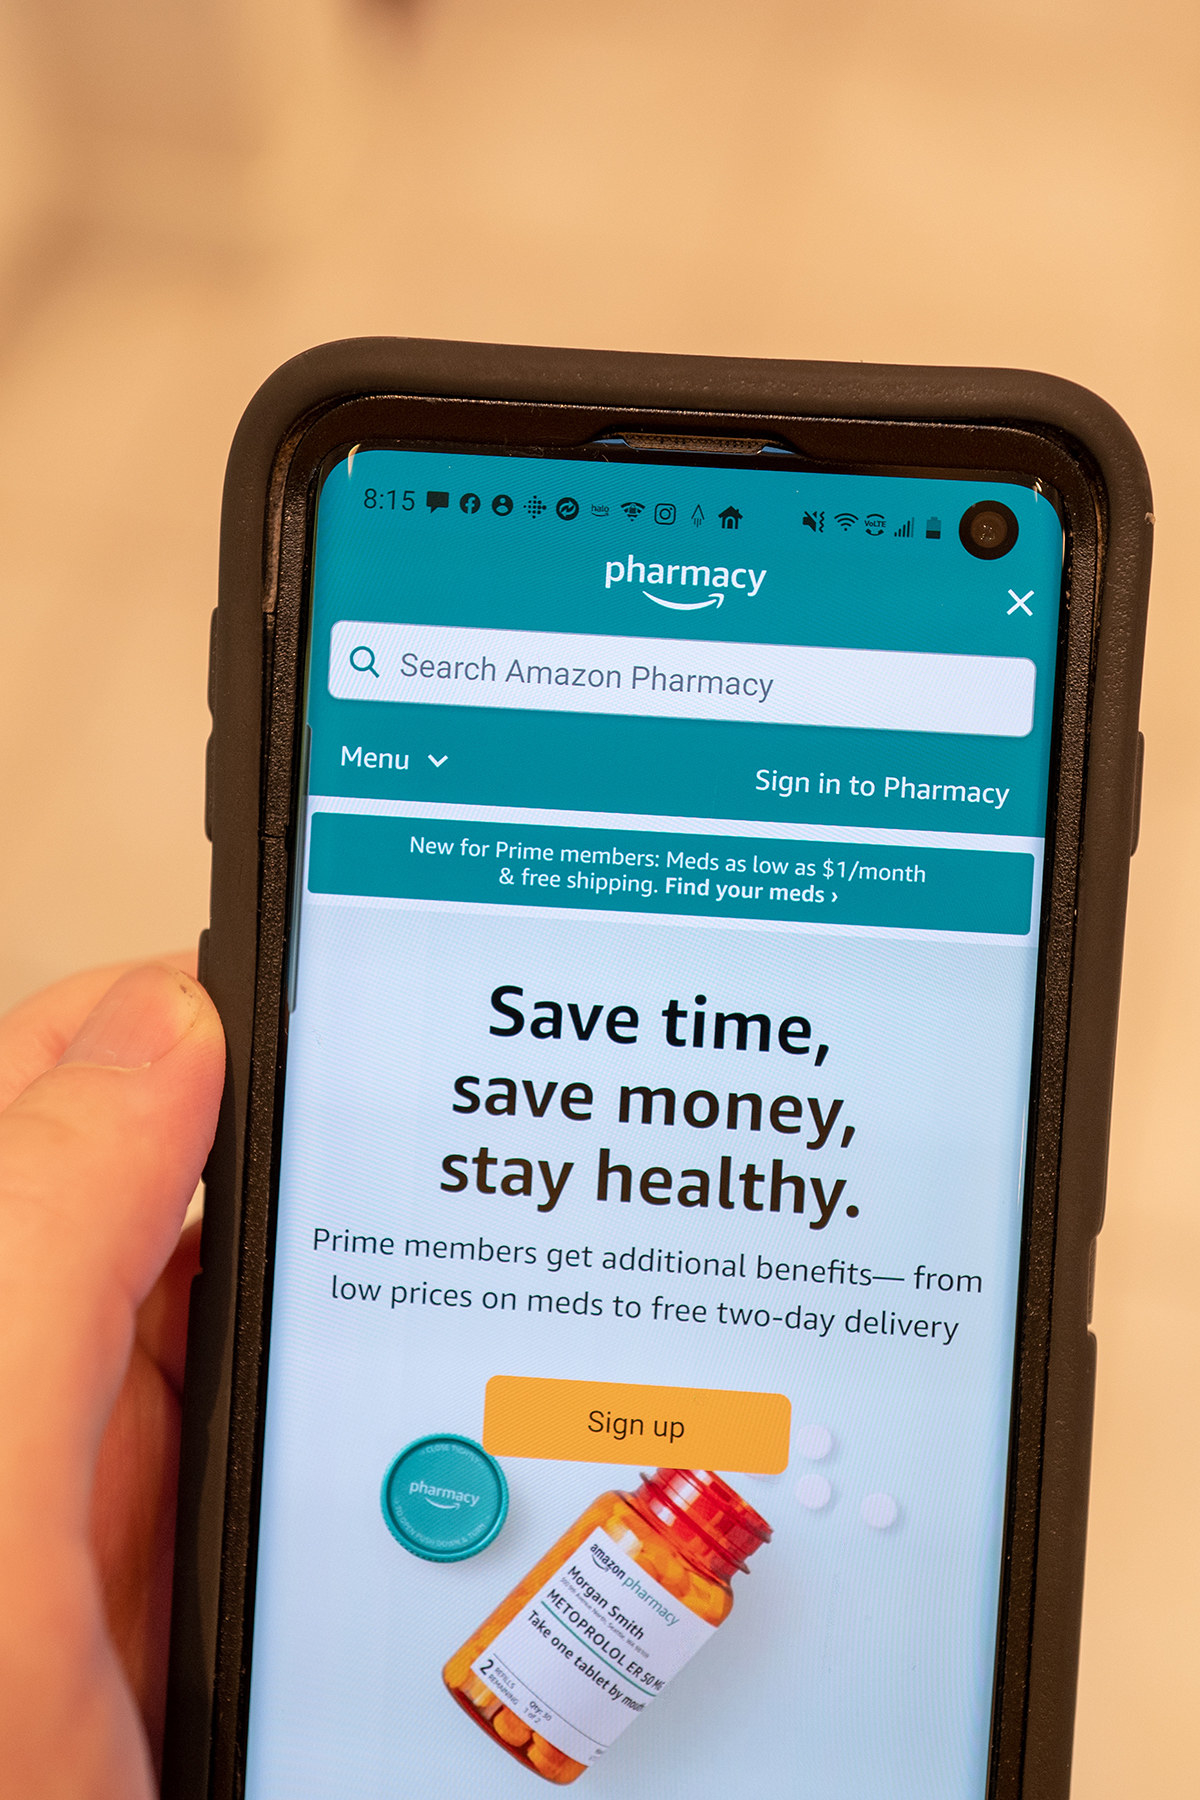 Amazon Pharmacy on an app on a smartphone